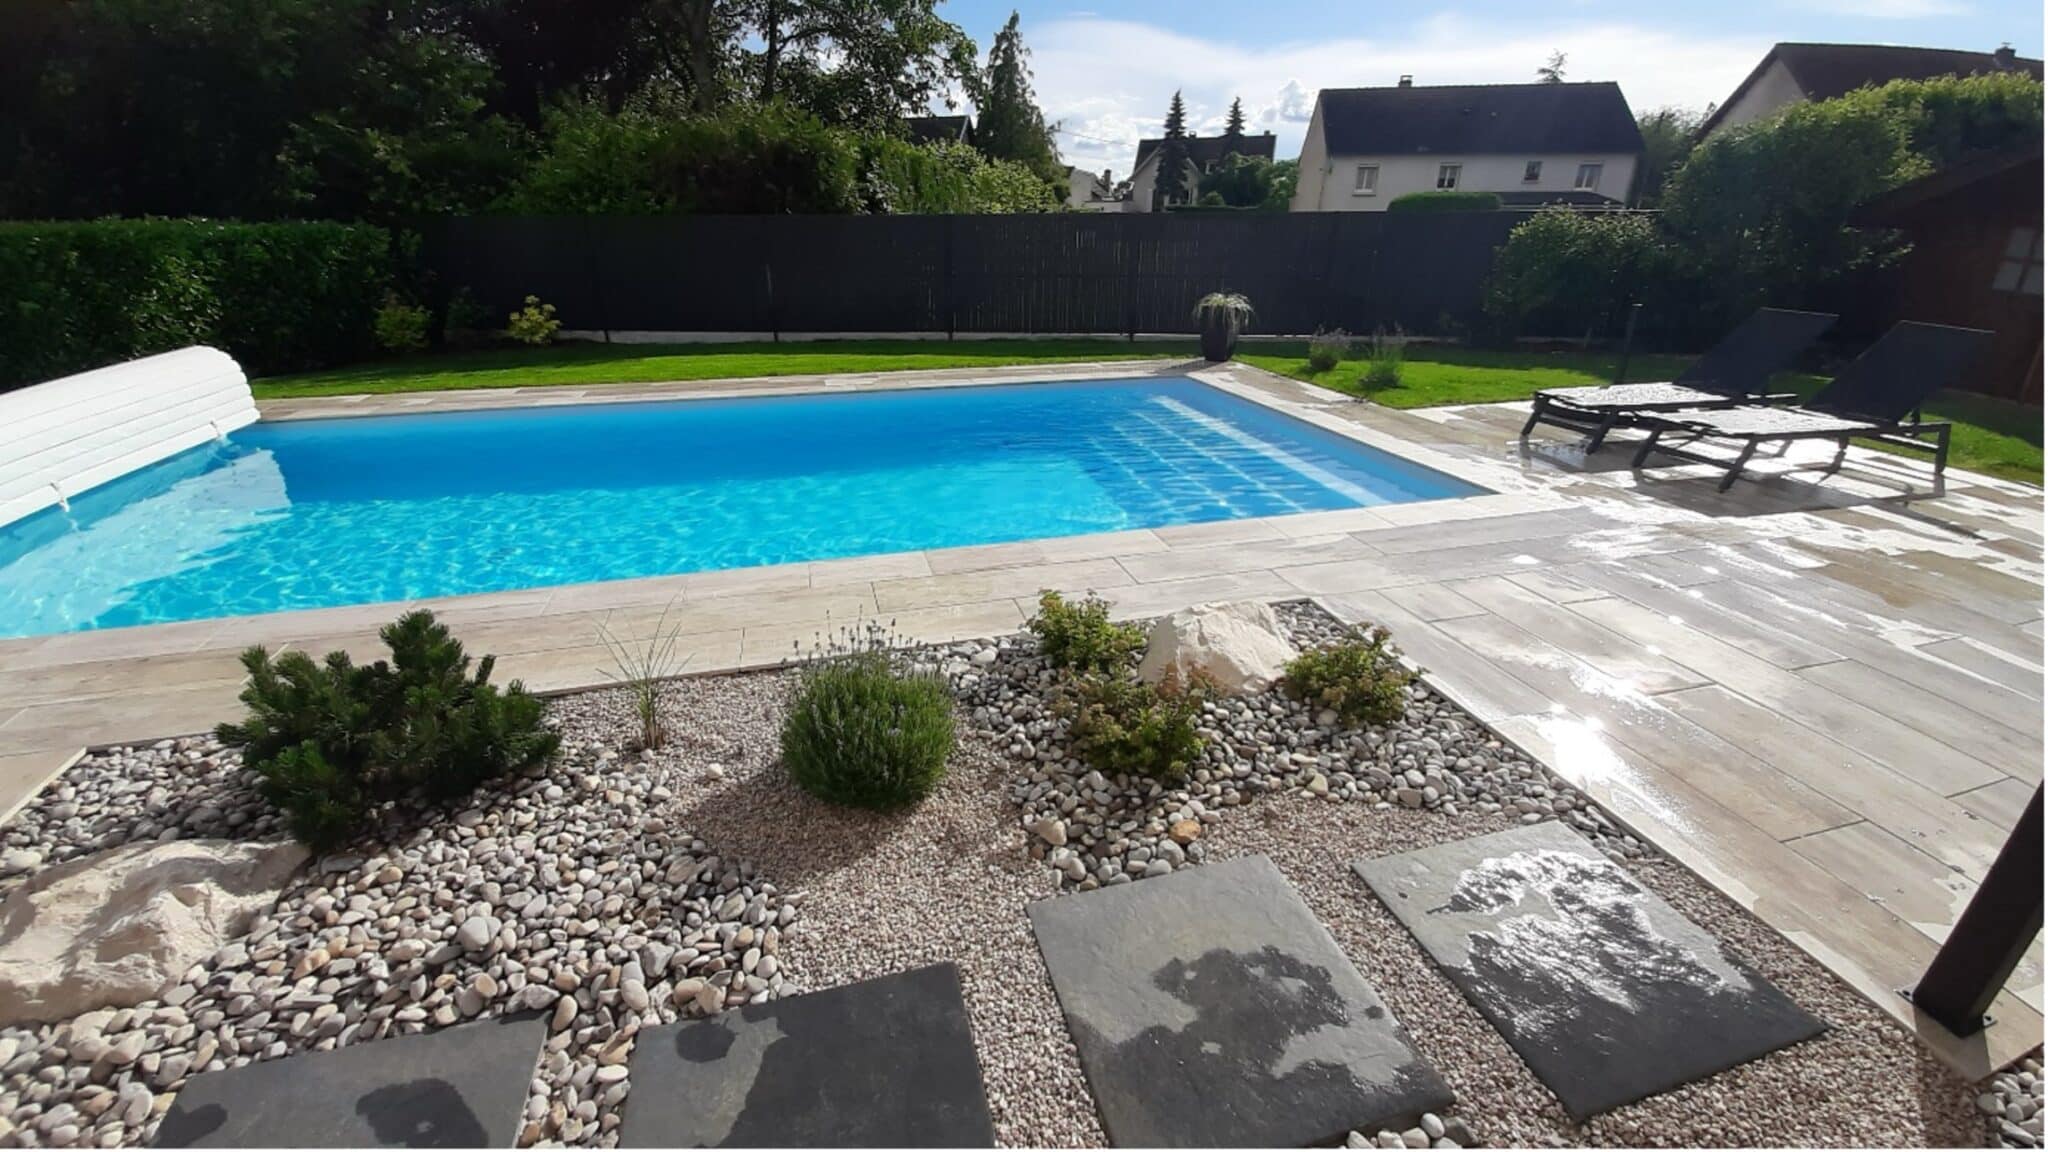 Réalisation Lantana Paysage Chalon-sur-Saône - aménagement de plage piscine avec terrasse en grès cérame imitation bois à Givry (71)